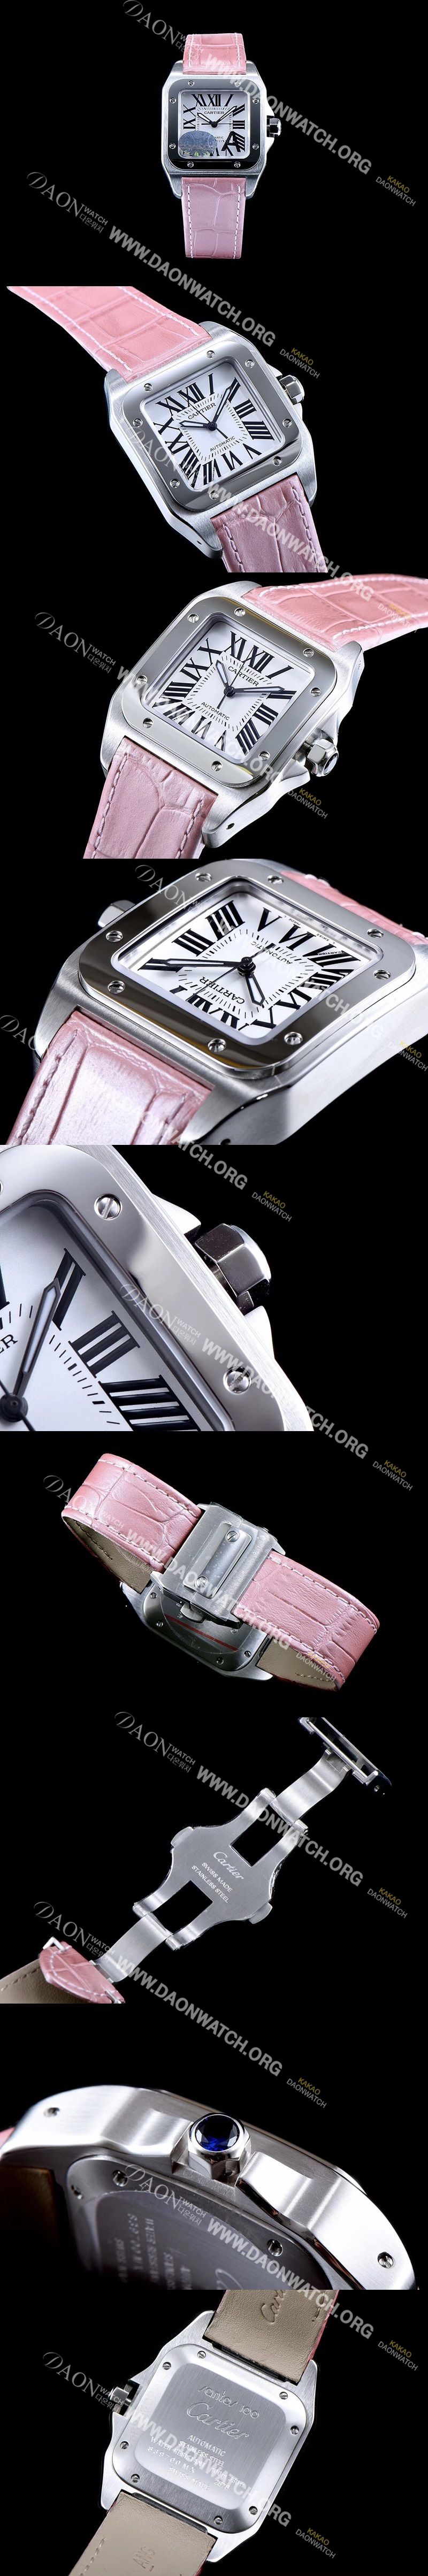 레플리카 [까르띠에] 남여공용 산토스100 W20126X8 커플용 워치 화이트 다이얼 핑크 레더 스트랩 오토매틱 무브먼트 CAR0333 iq